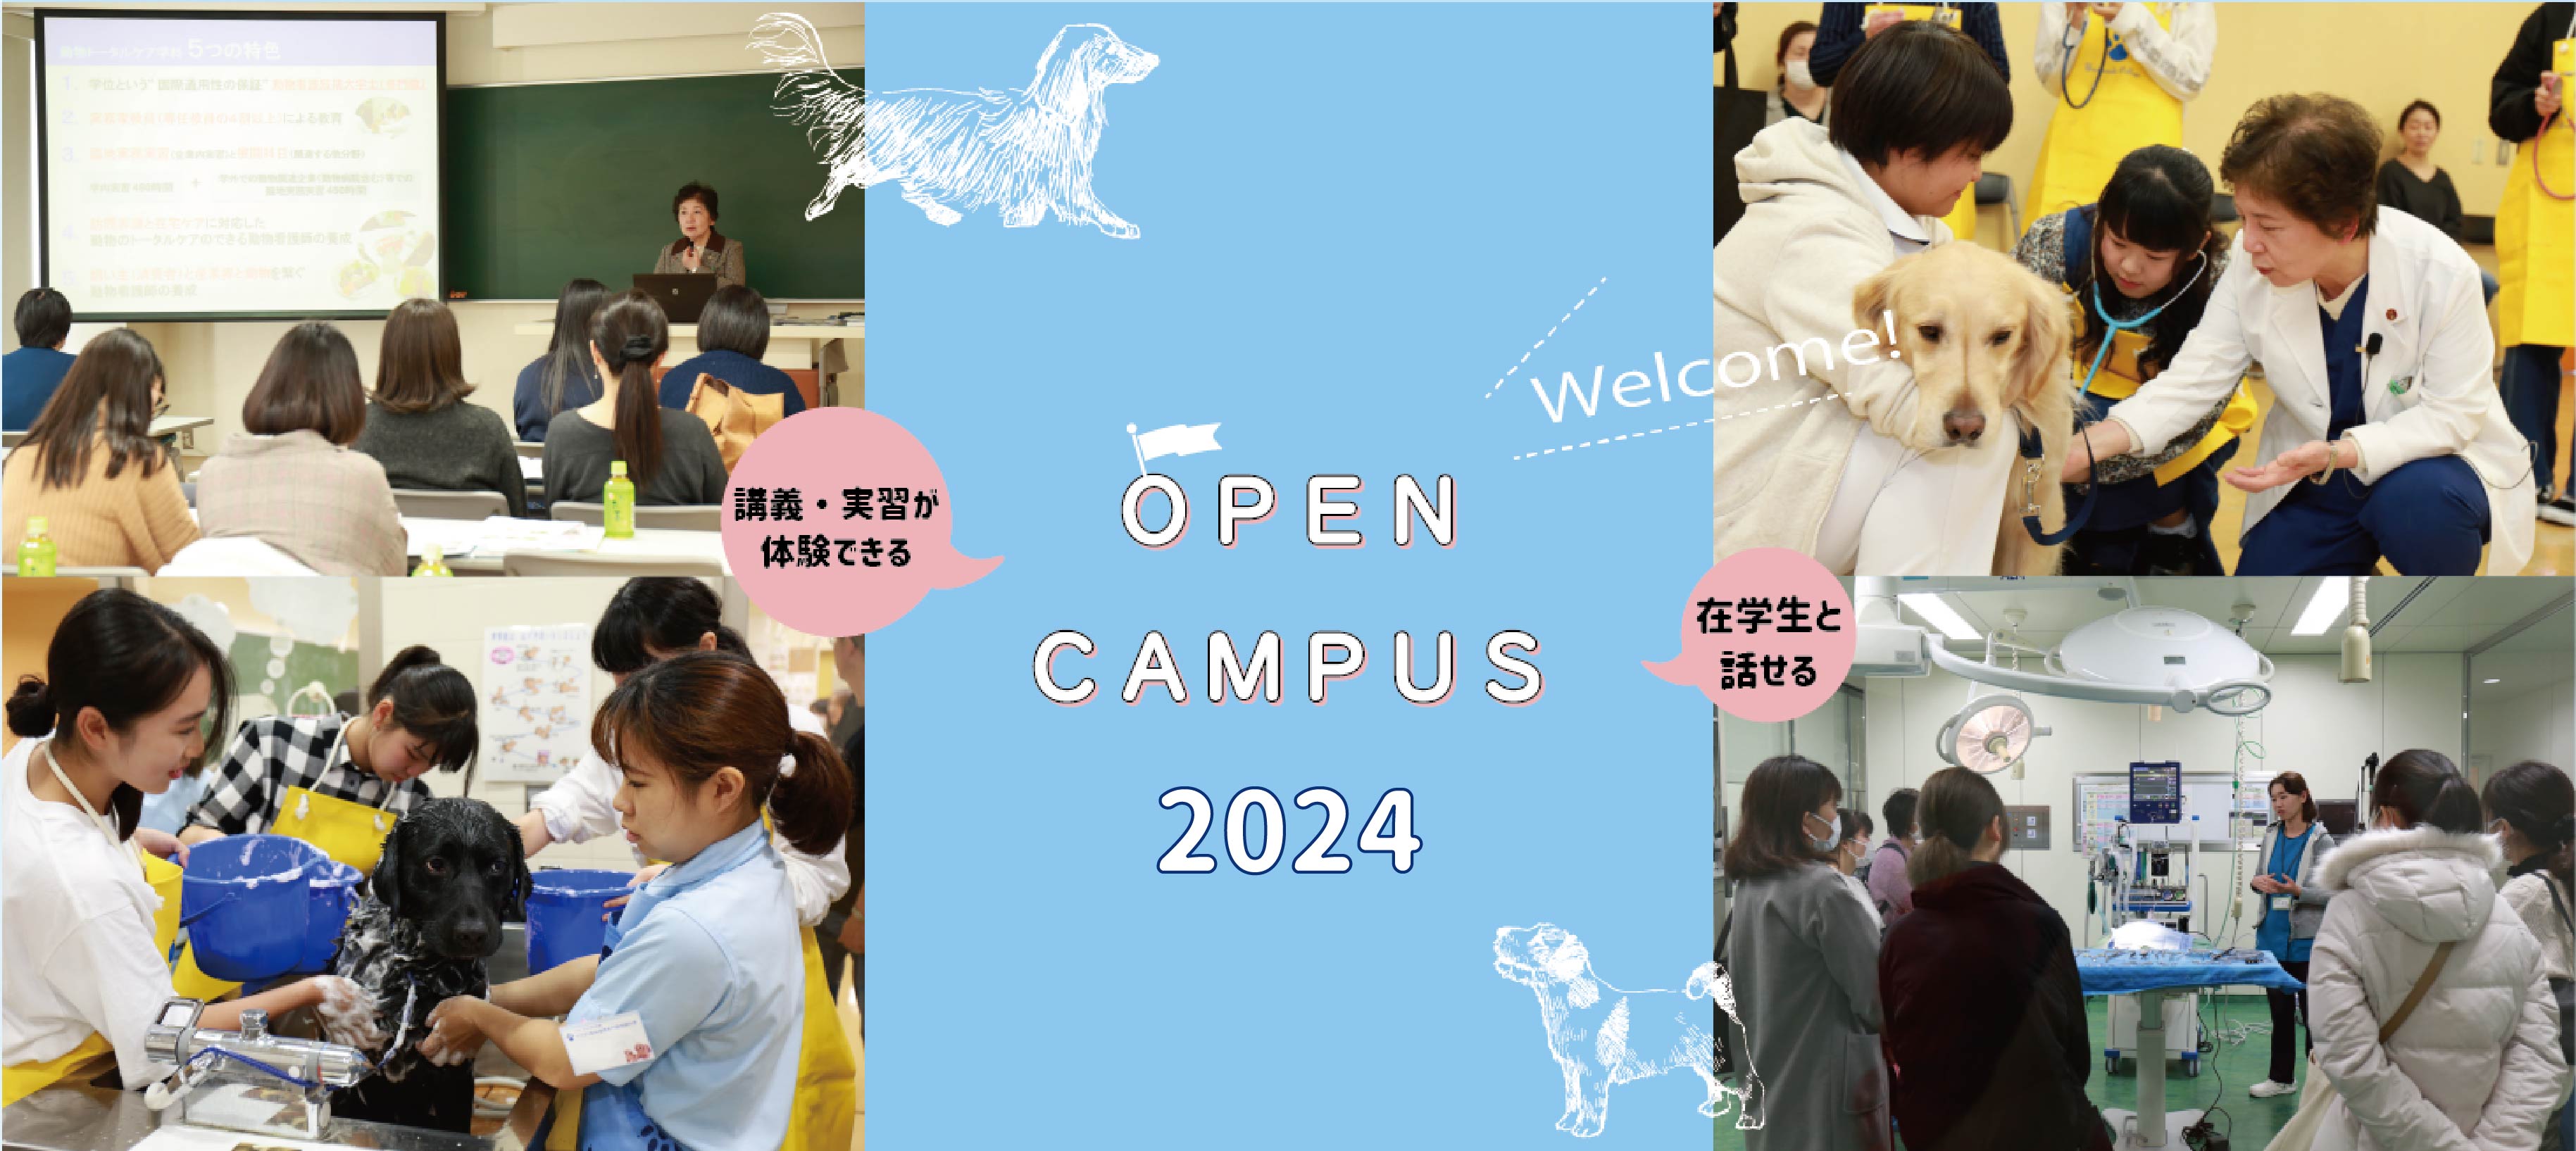 open campus 2024